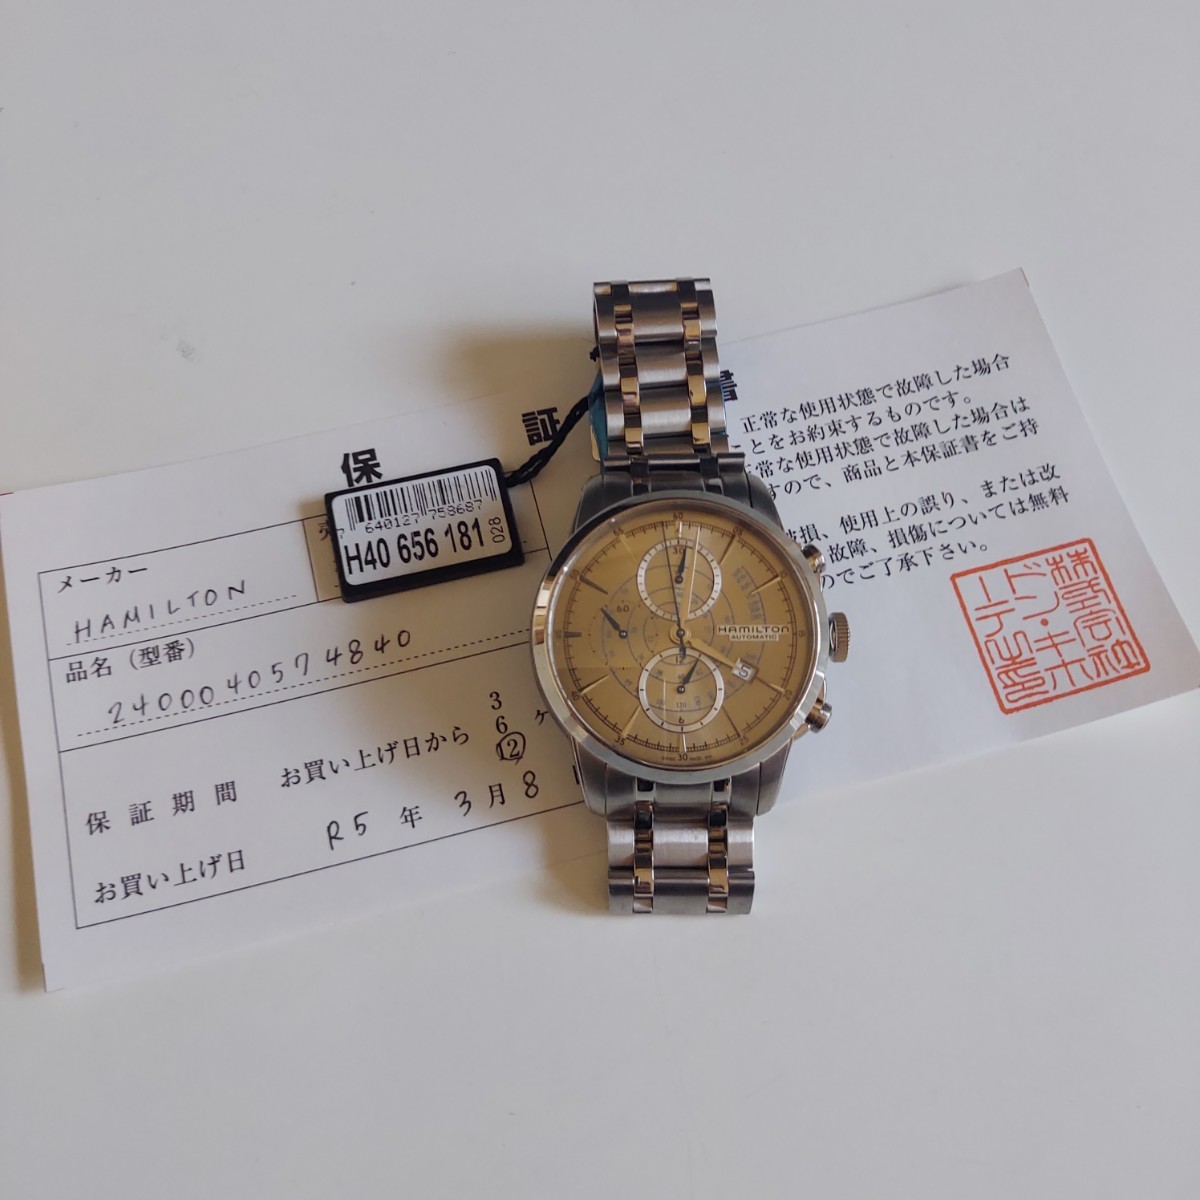 未使用 ハミルトン 腕時計 h40656181 アメリカンクラシック レイル